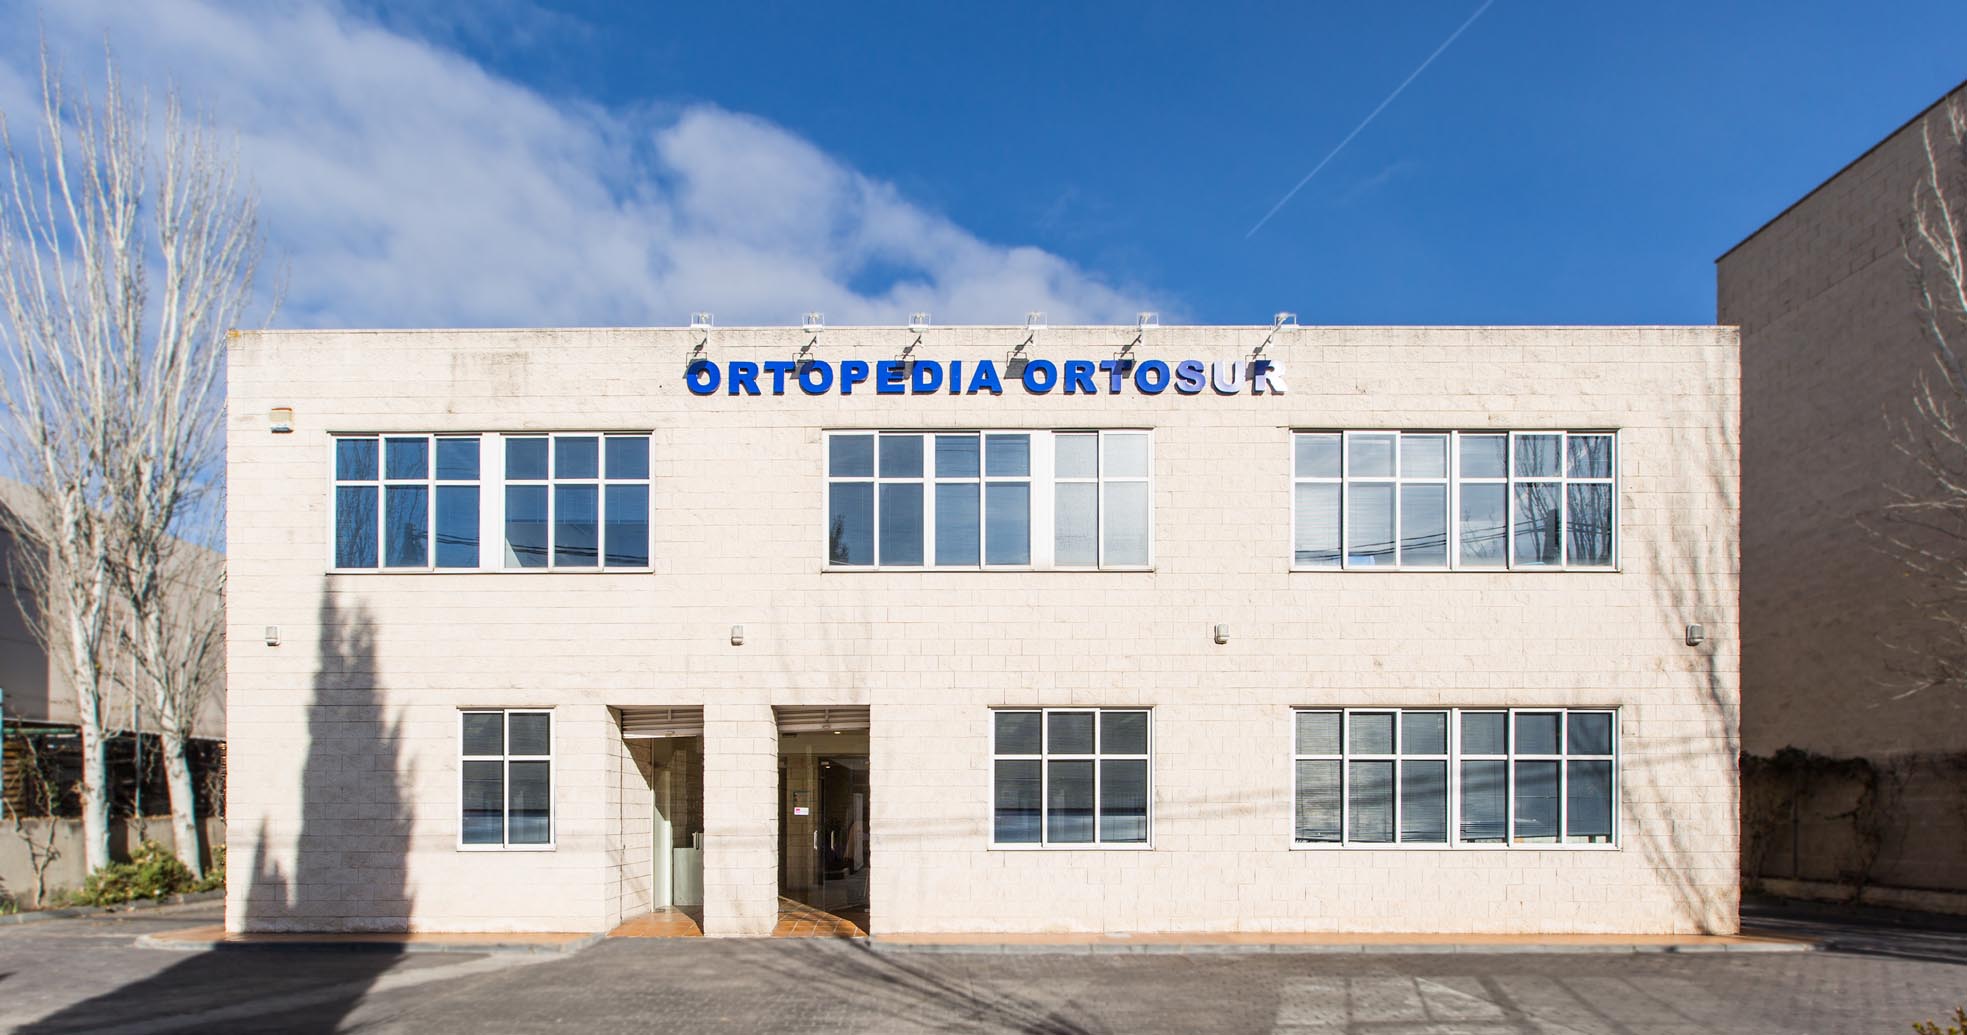 ortosur-fachada-quienes-somos-ortopedia